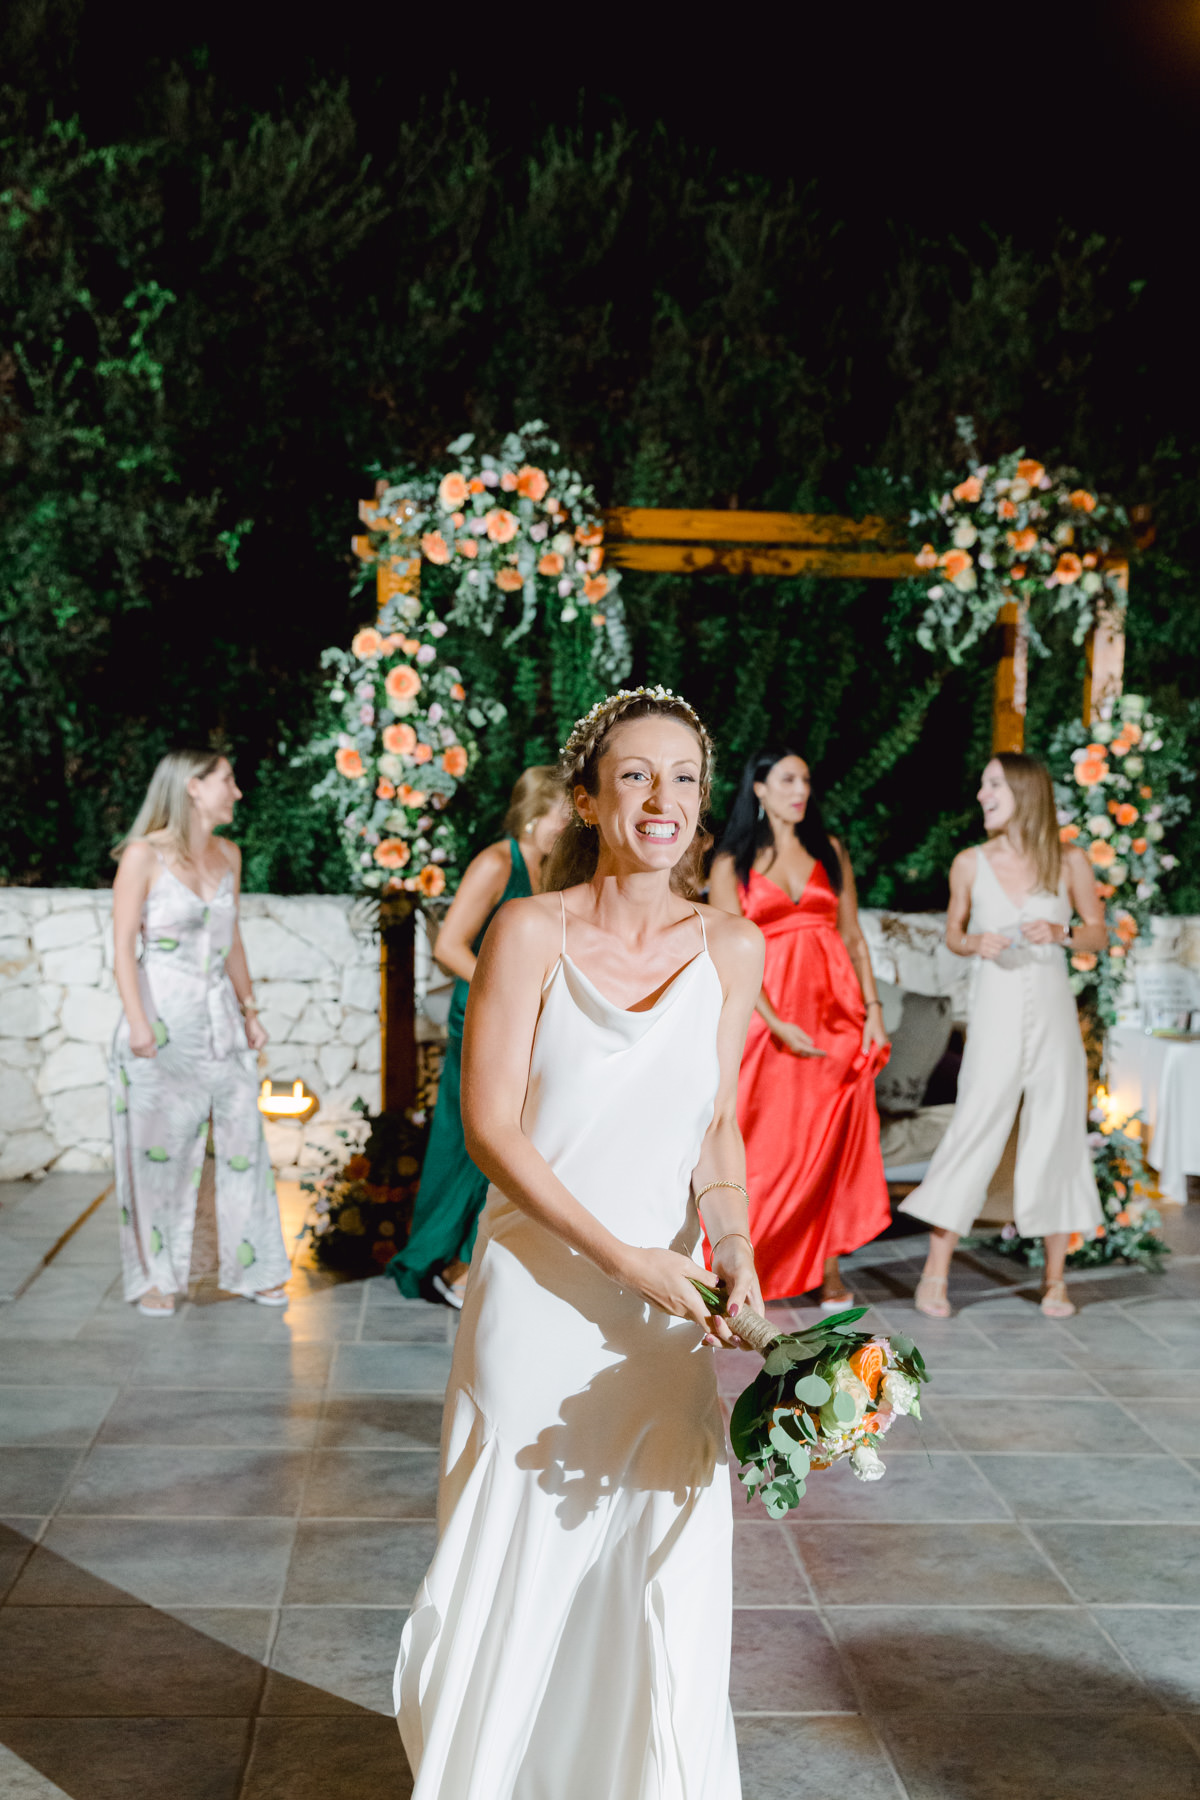 Wedding Celebration of Marina and Thodoros by Vicky Bekiaridou Photography Studio